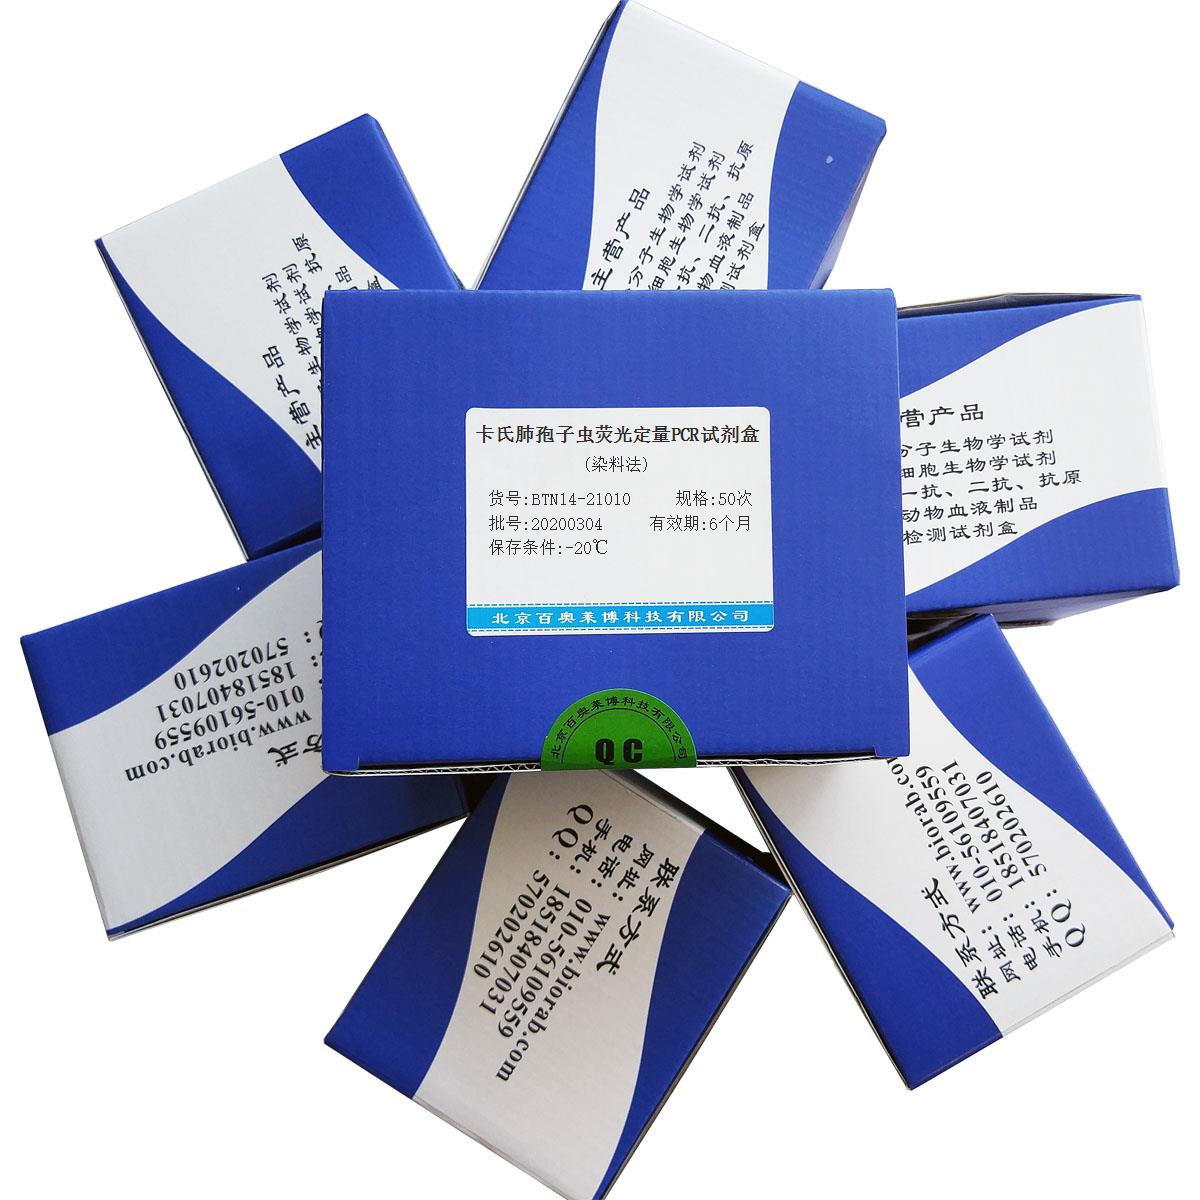 卡氏肺孢子虫荧光定量PCR试剂盒(染料法)